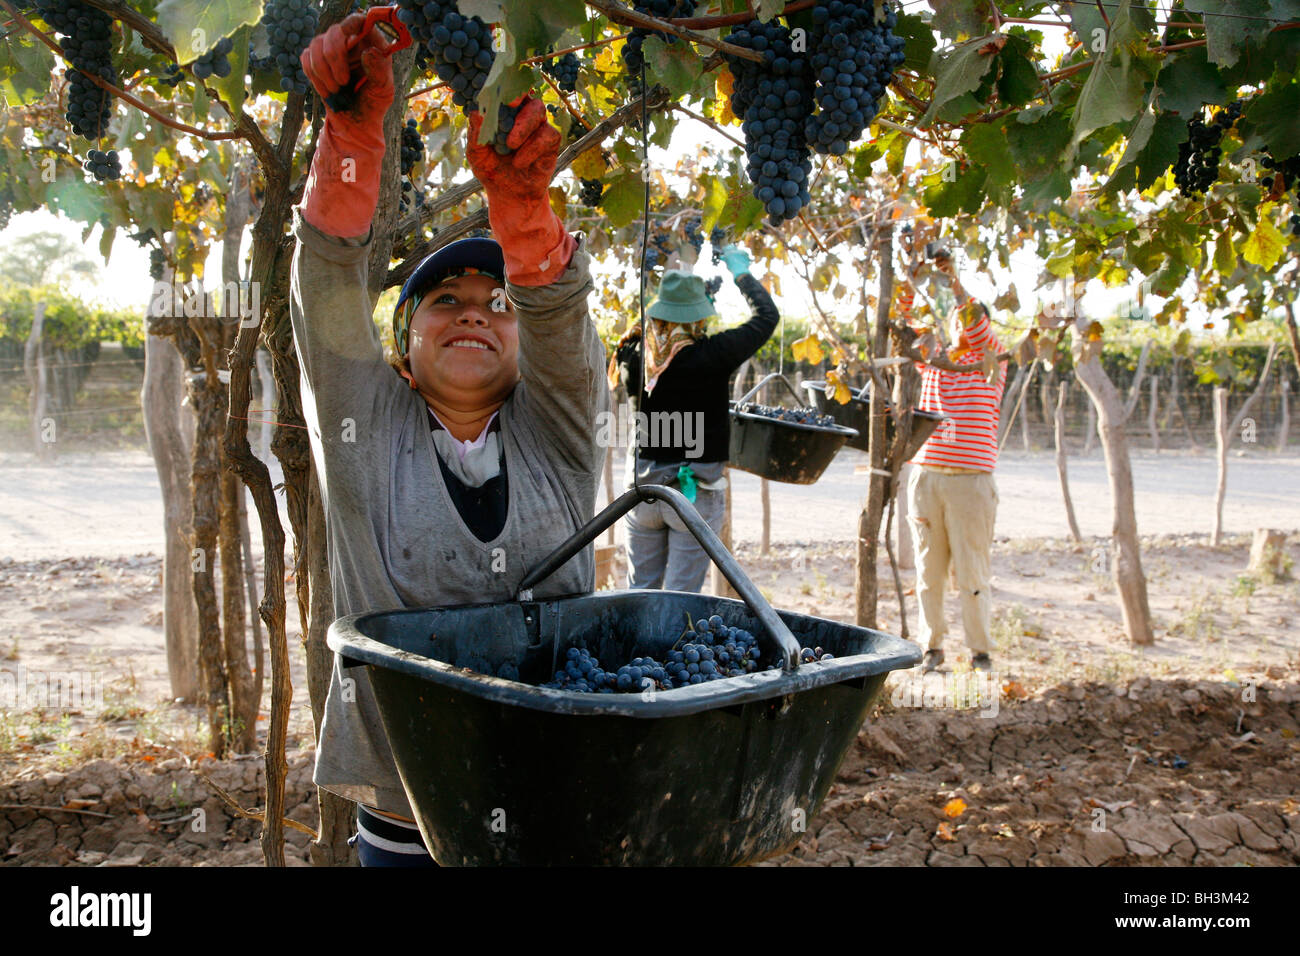 Woman harvesting grapes dans un vignoble dans la région de lujan de Cuyo, Mendoza, Argentine. Banque D'Images